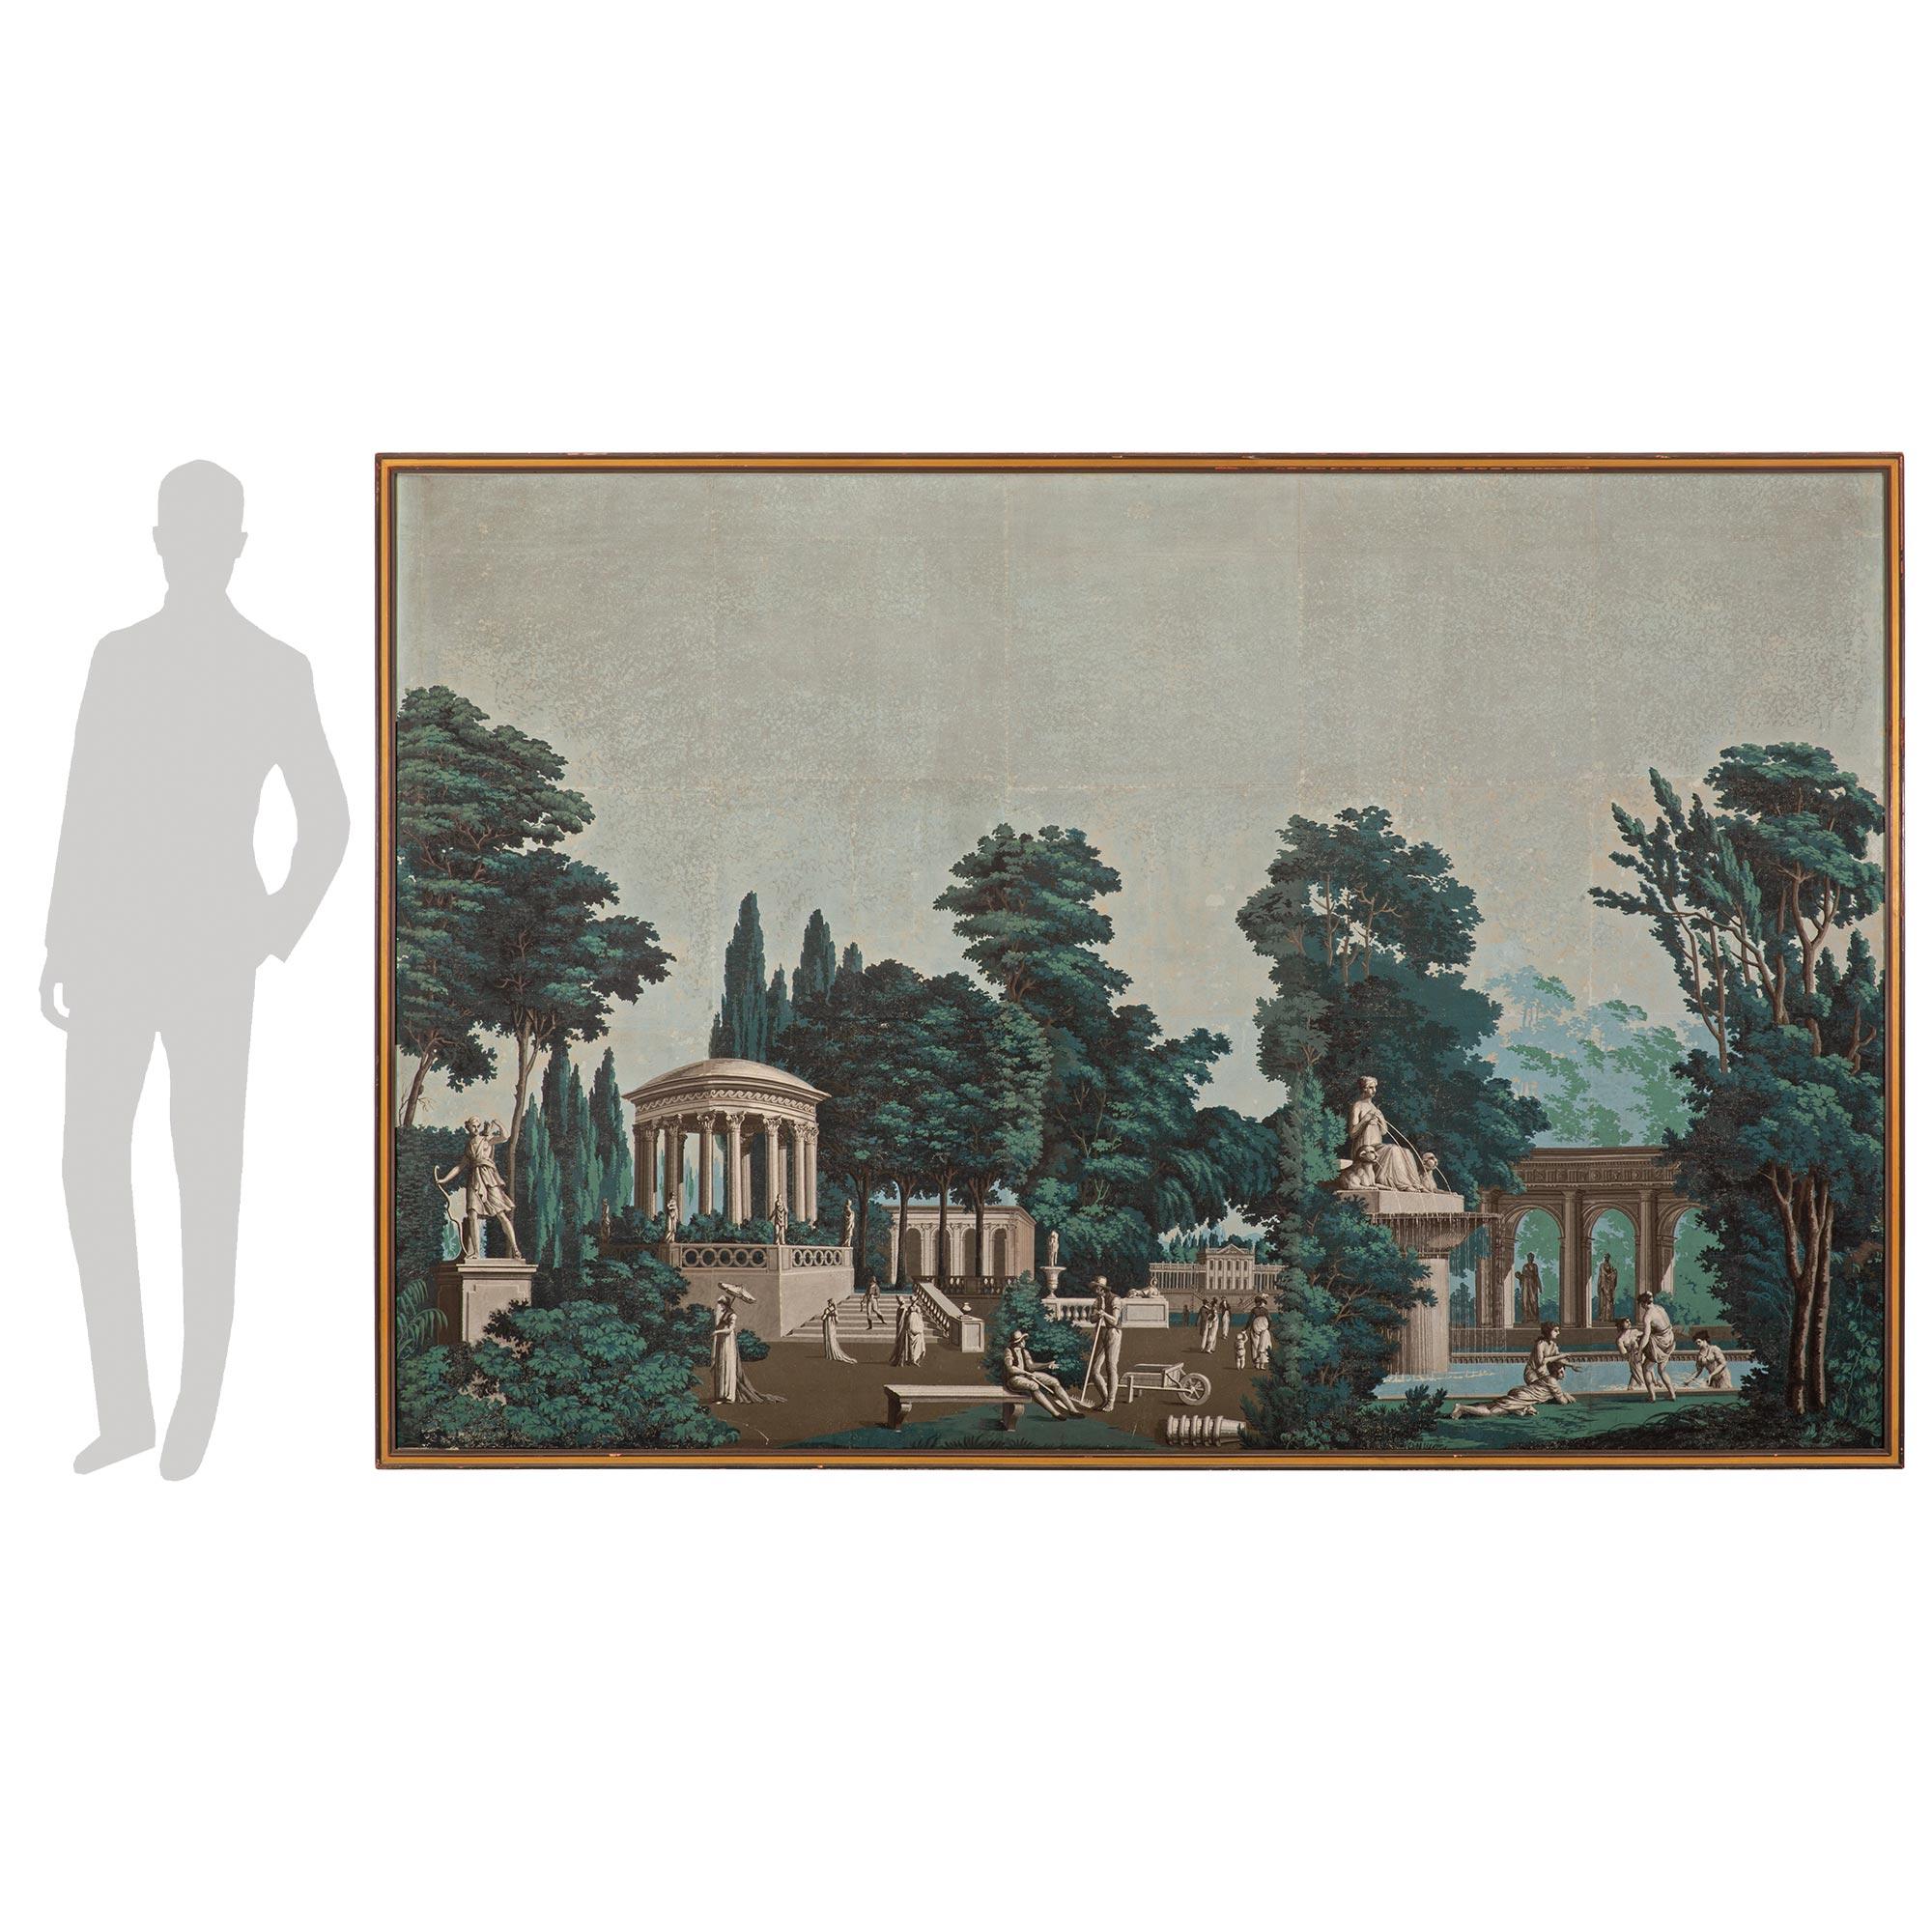 Un décor mural très décoratif et de très grande taille en papier peint encadré du 19ème siècle français. Le papier peint est placé dans un cadre droit patiné avec un élégant motif marbré. Le papier peint représente une jolie scène dans un parc